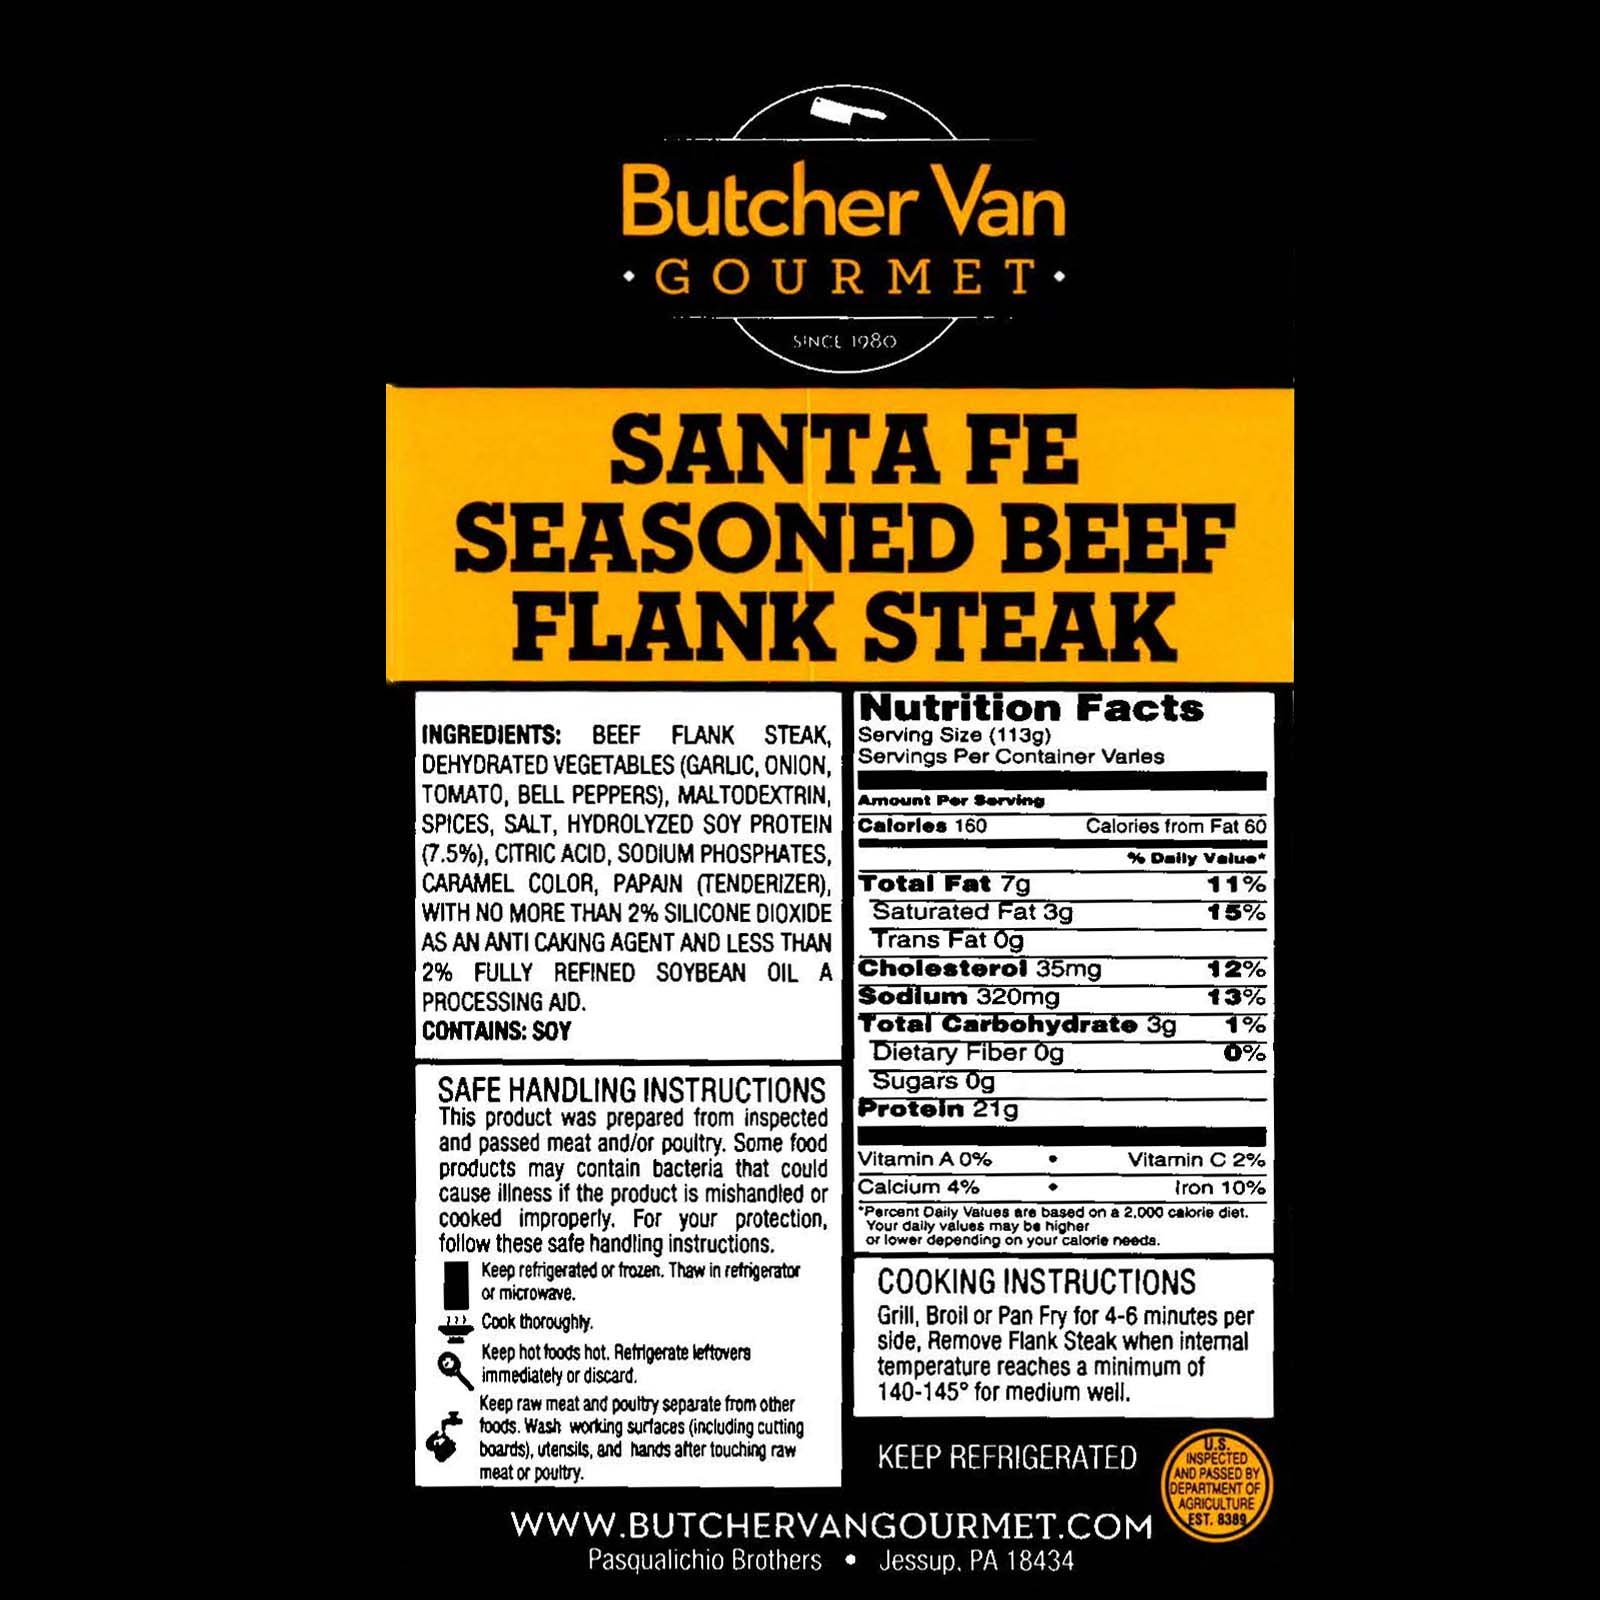 Sante Fe Seasoned Beef Flank Steak